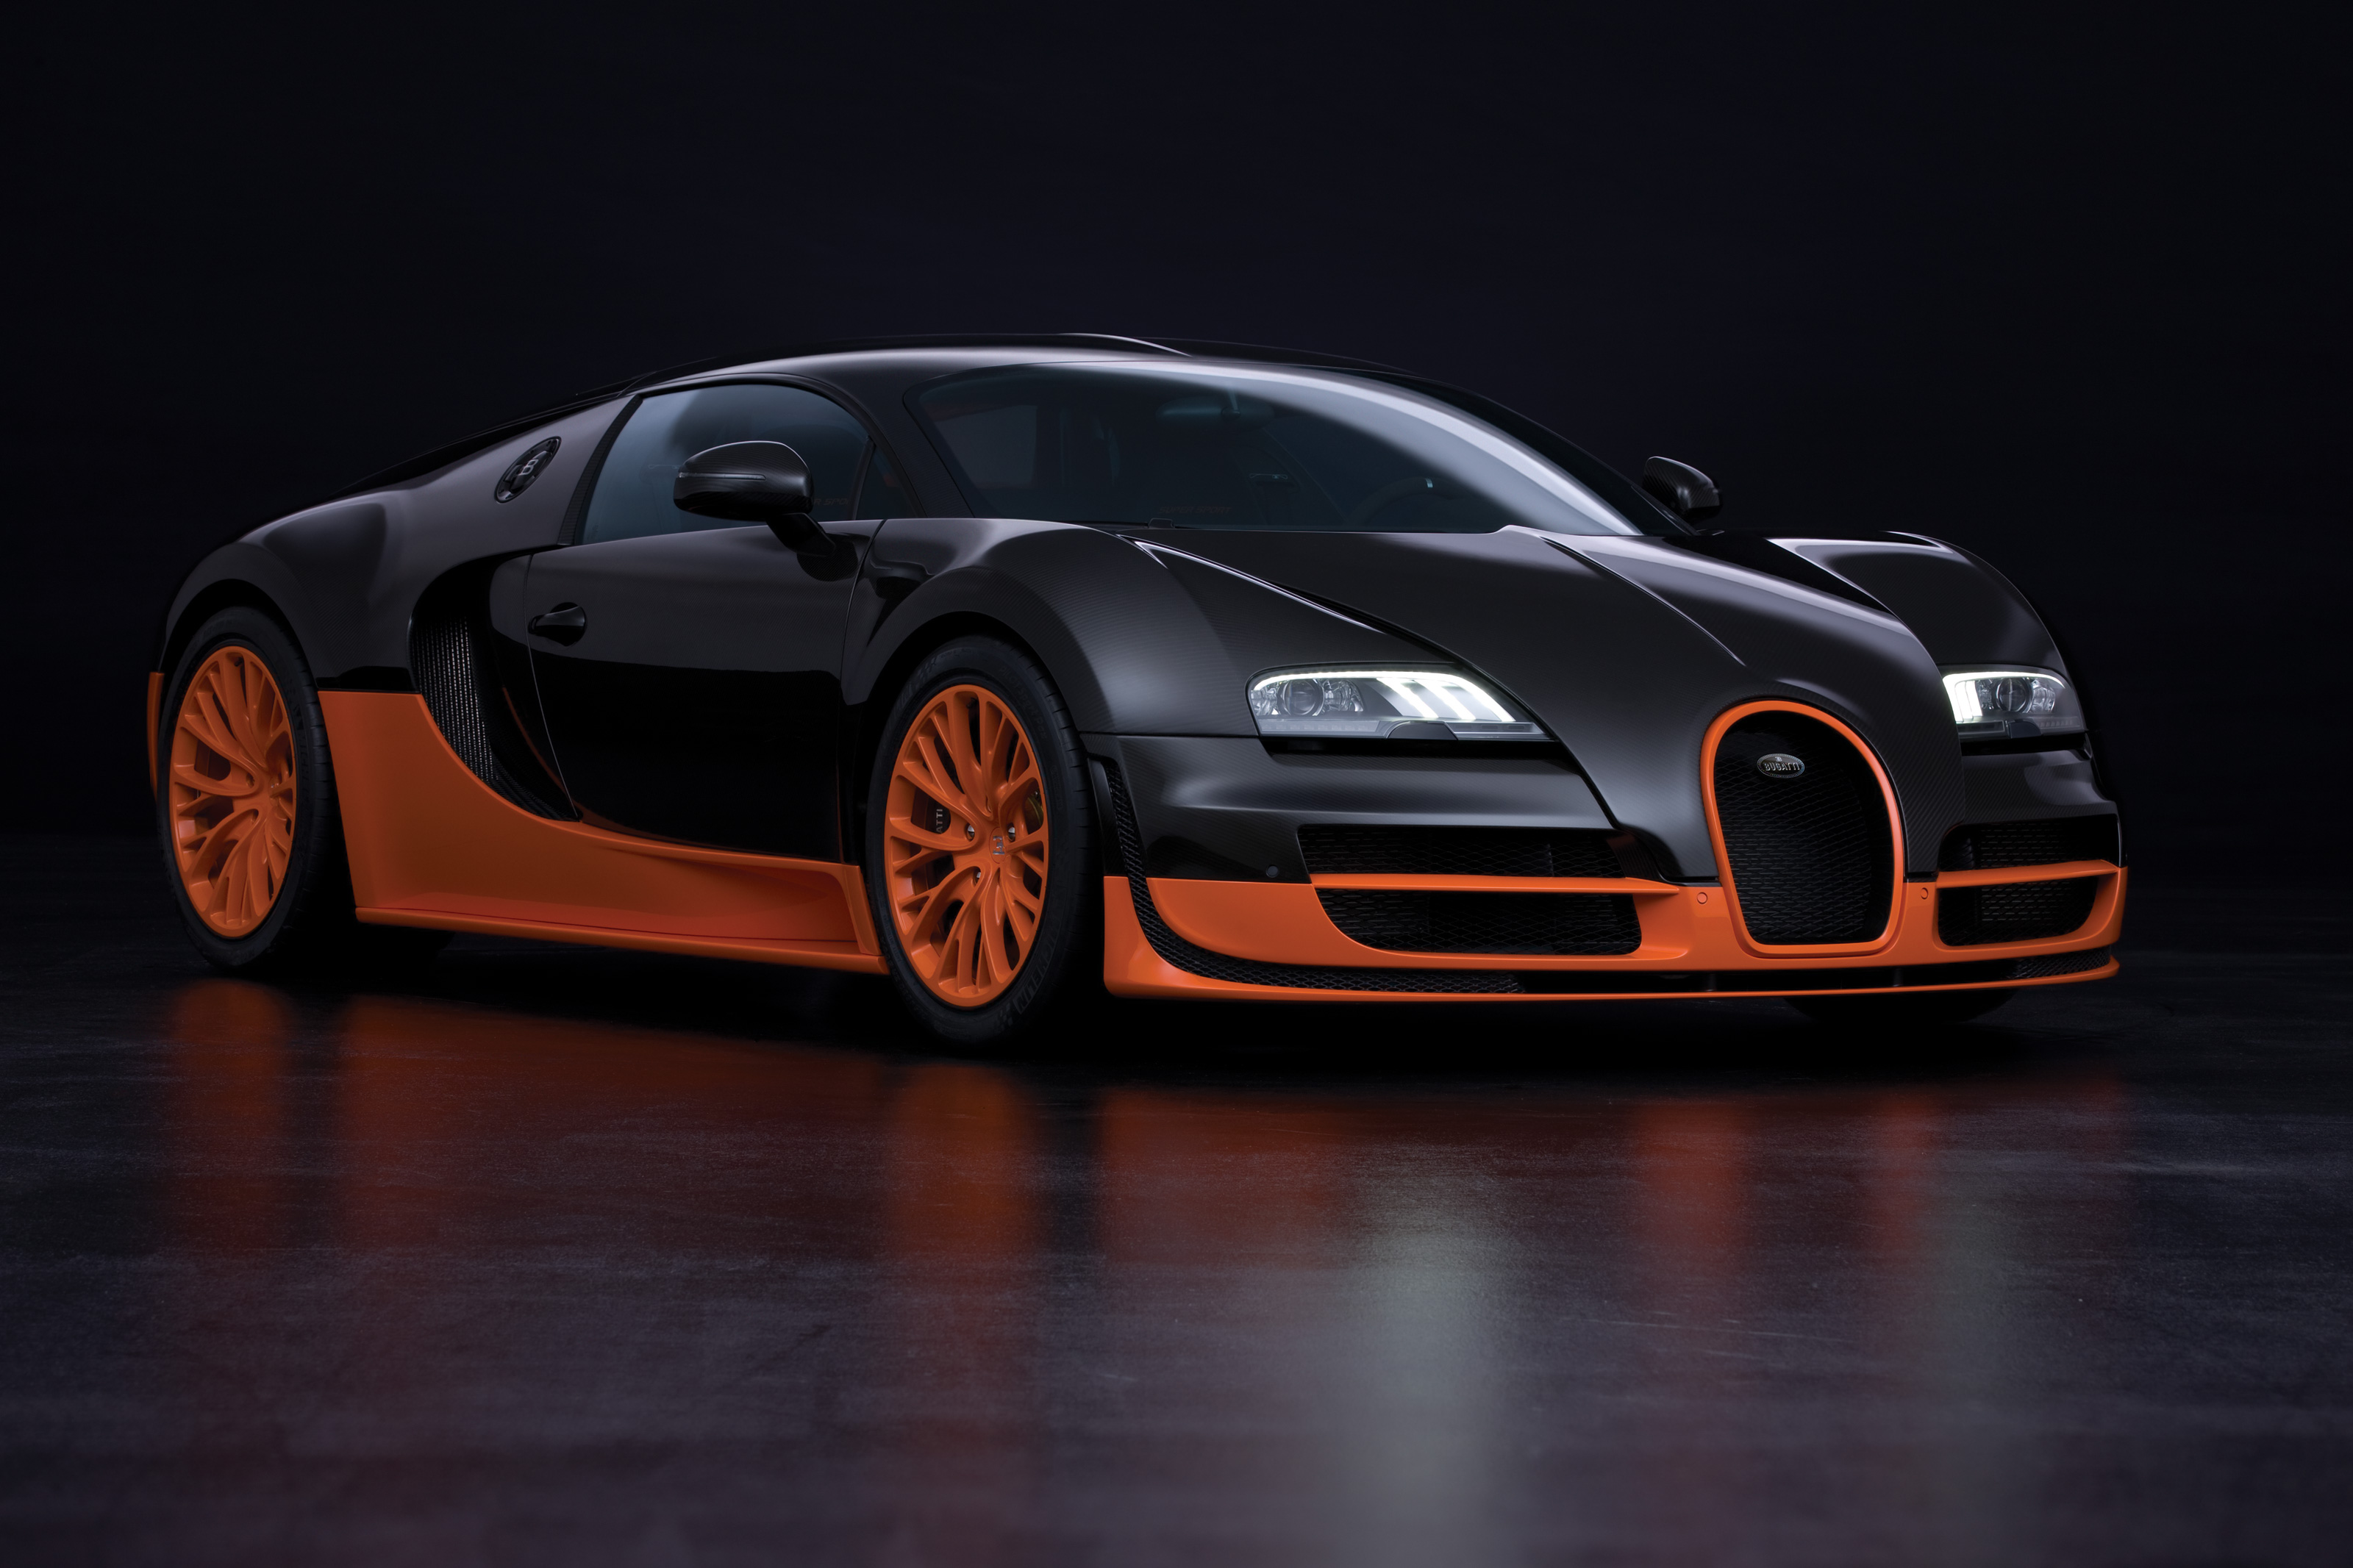 Télécharger des fonds d'écran Bugatti Veyron 16 4 Grand Sport HD